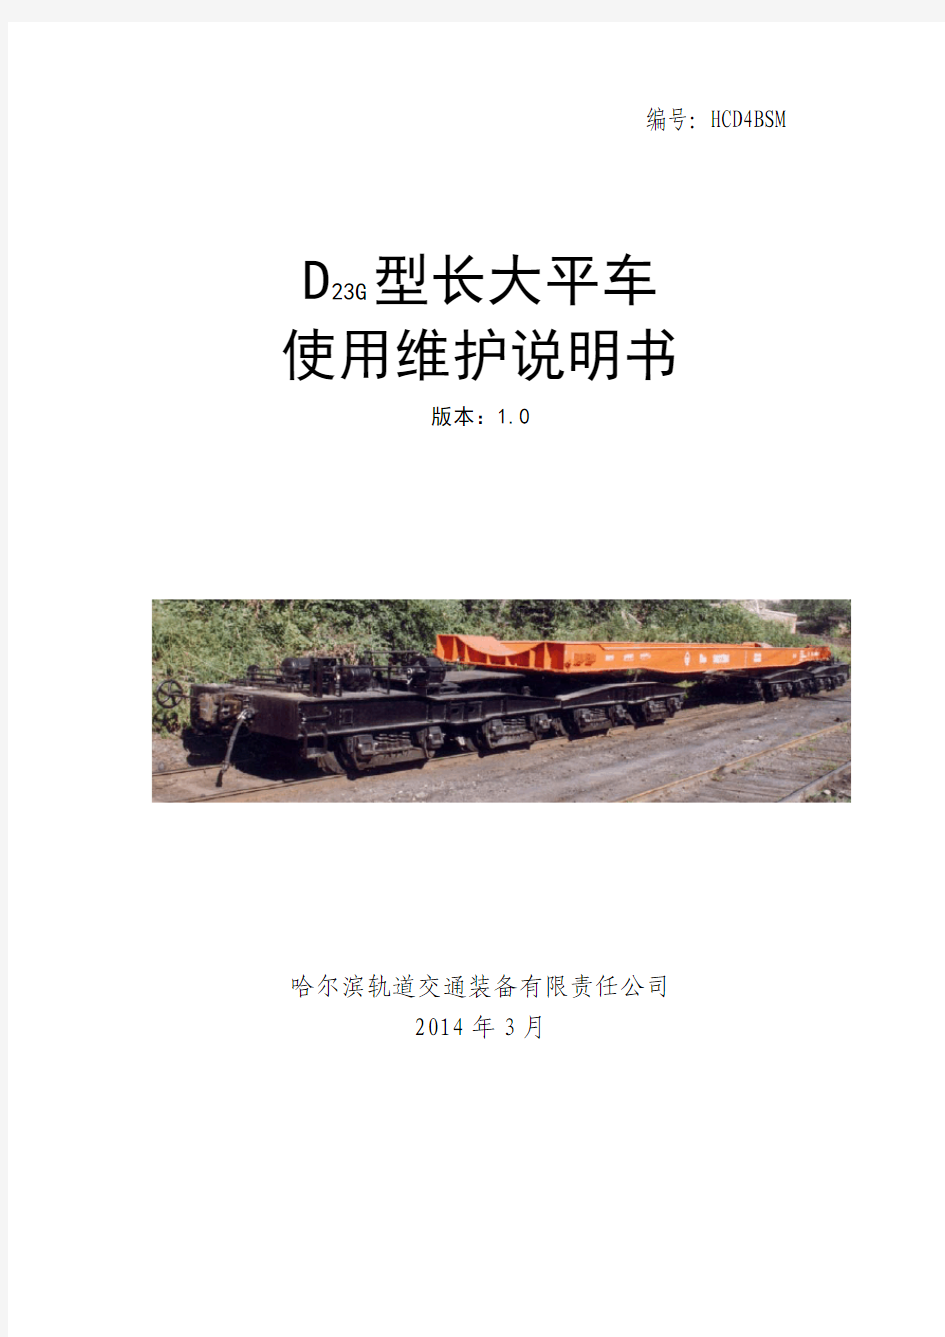 D23G型长大平车使用维护说明书(1.0版)